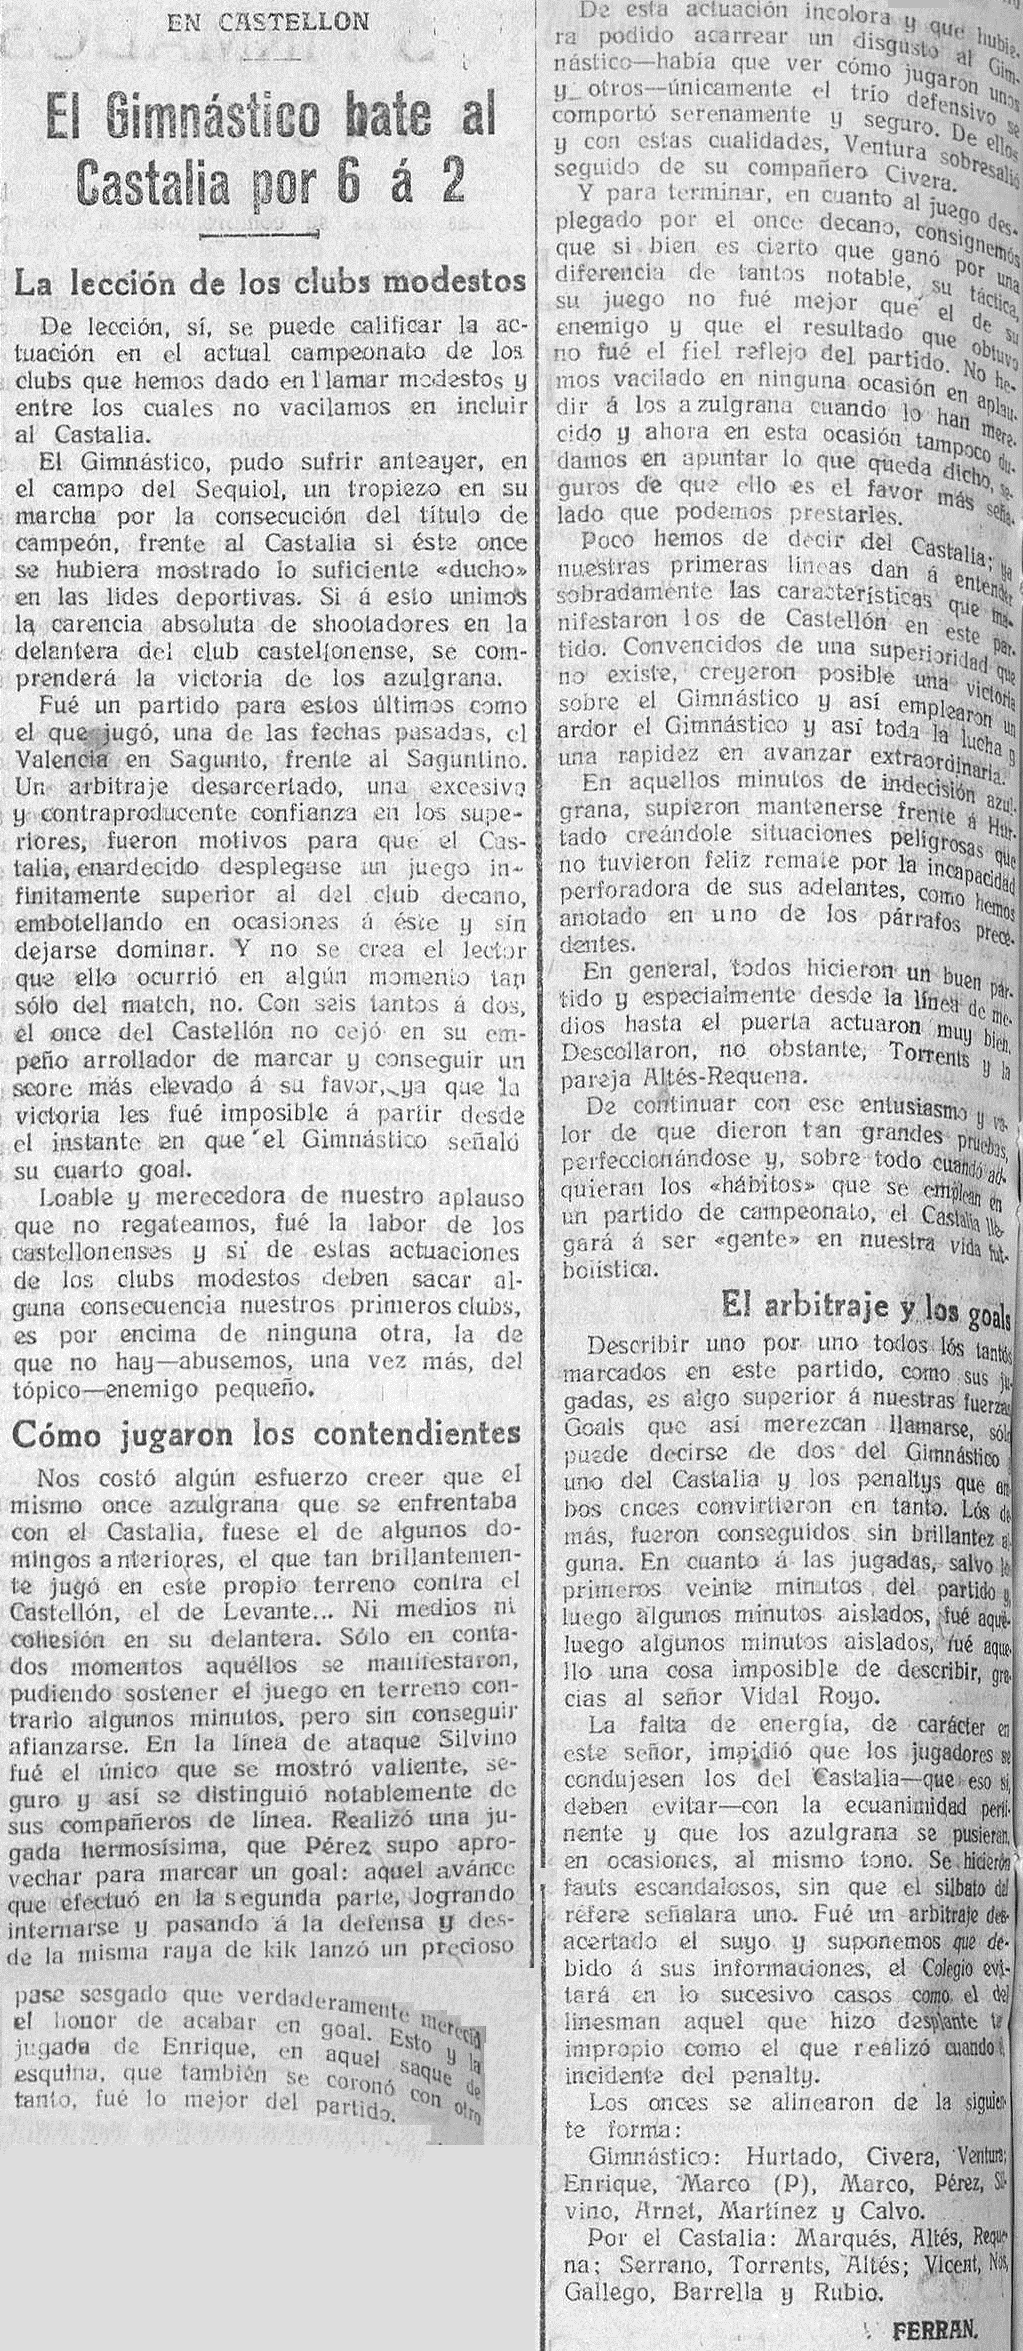 1925.11.01 (1 ноября 1925), Касталия - Гимнастико, 2-6.png